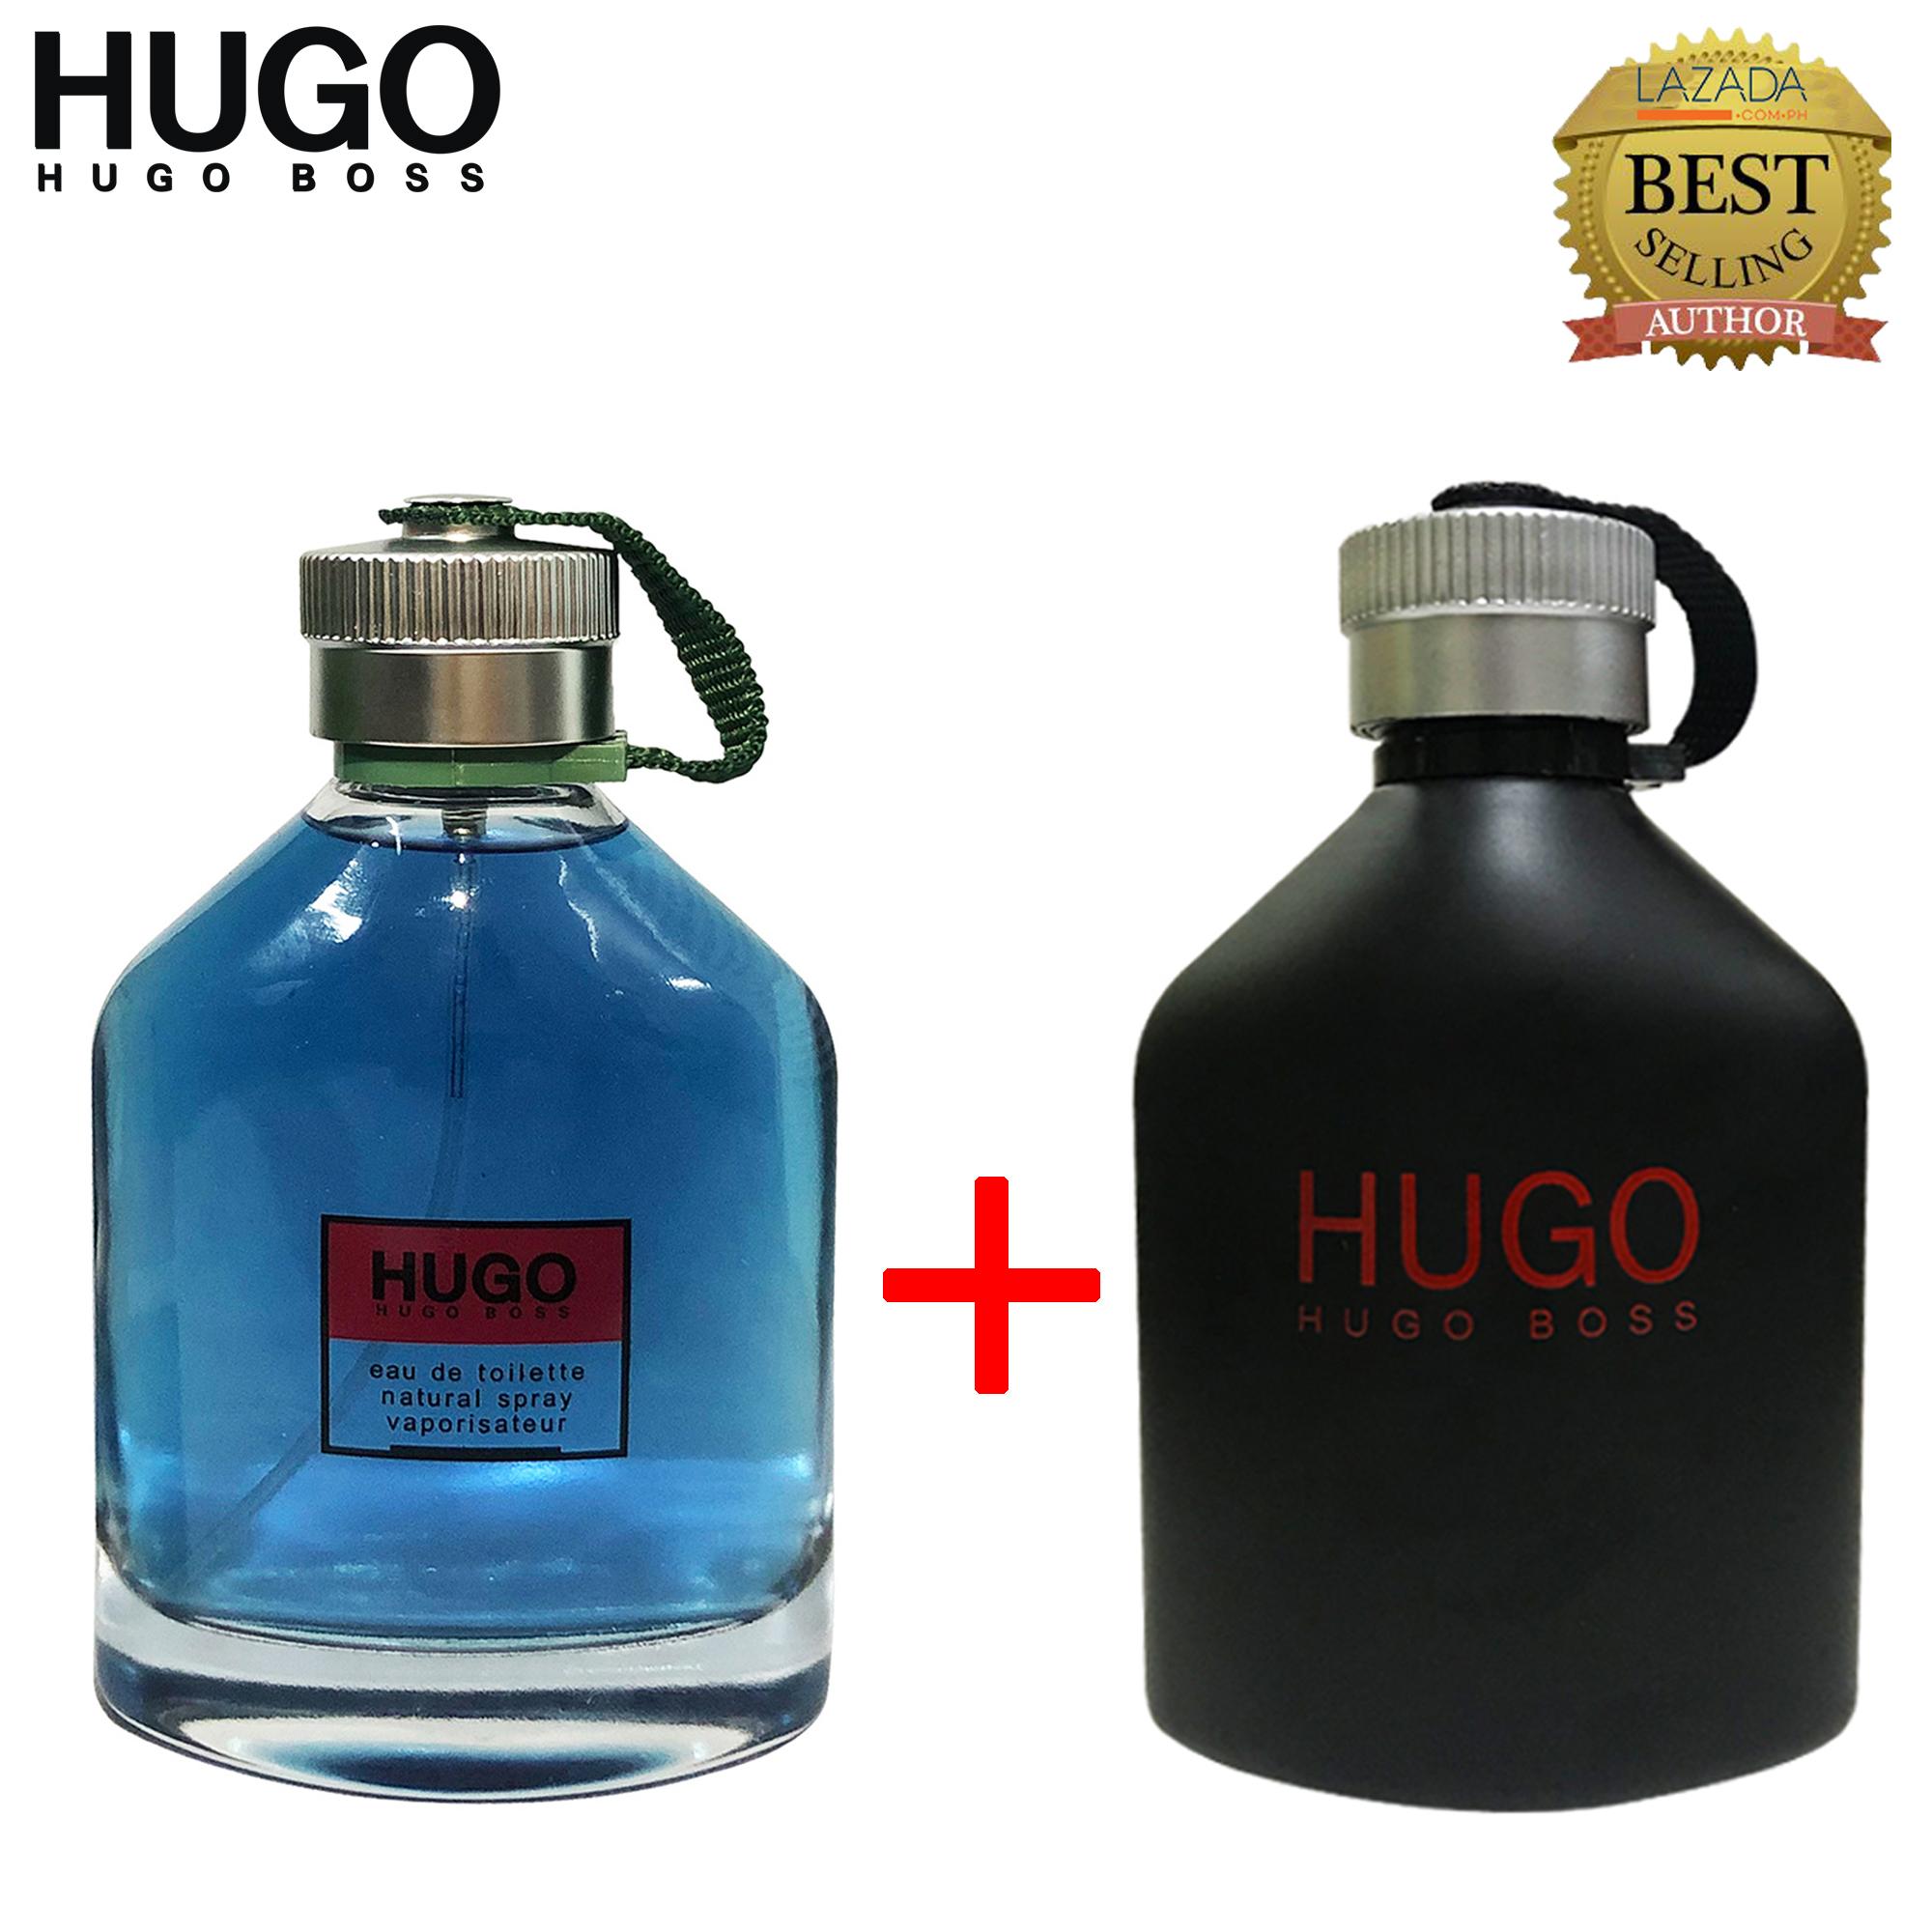 www hugo boss com online store